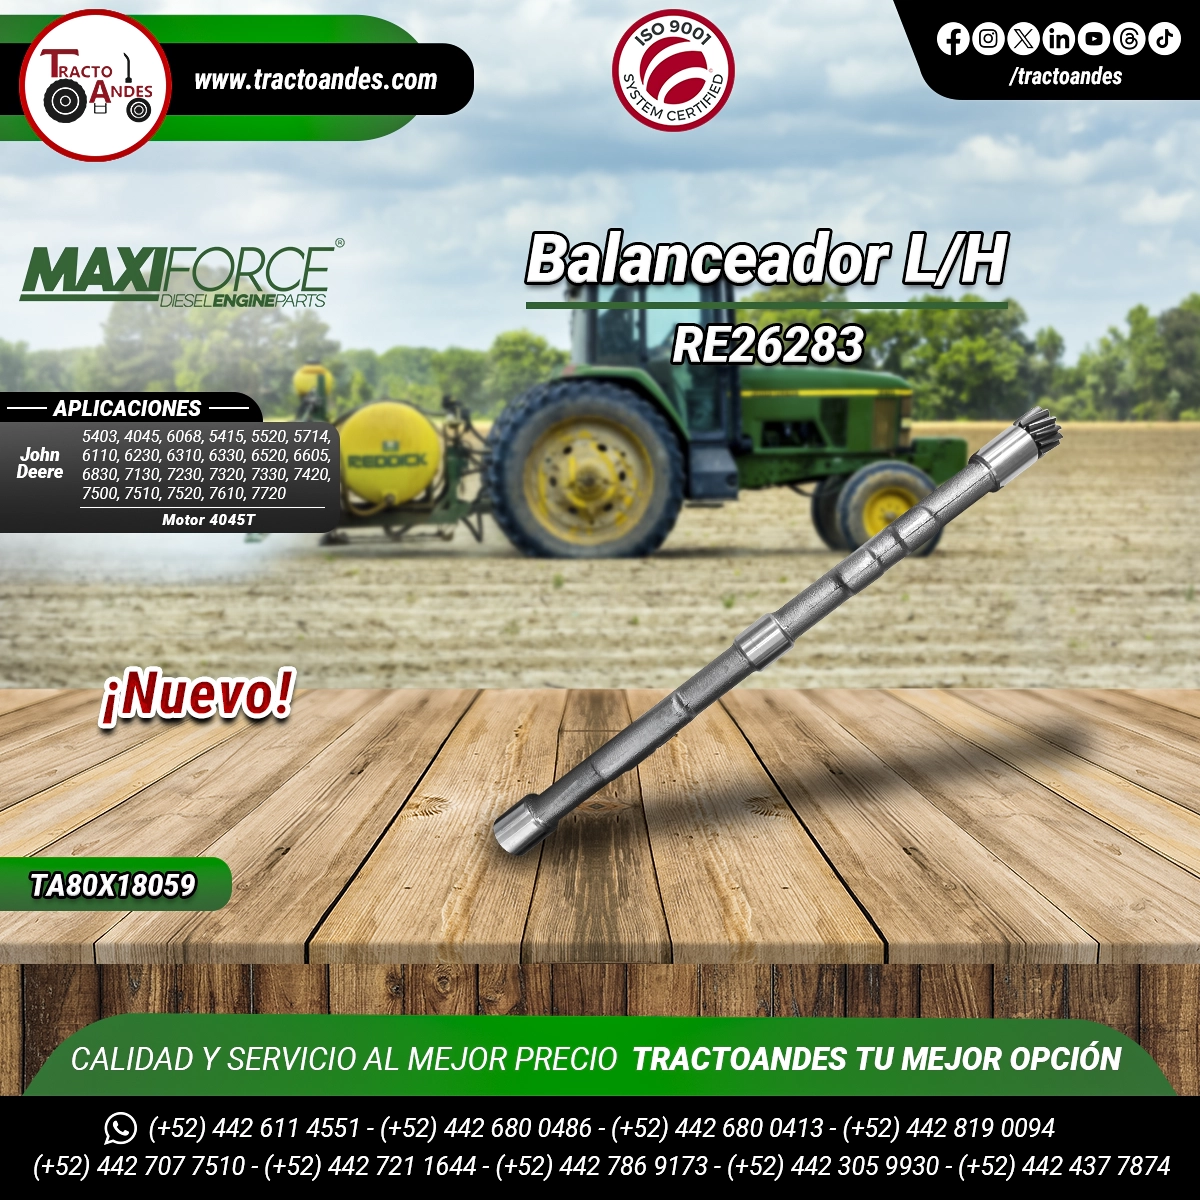 Balanceador-LH-RE26283-TRE26283-para-Motor-4045T-John-Deere-Refacciones-Agricolas-TractoAndes